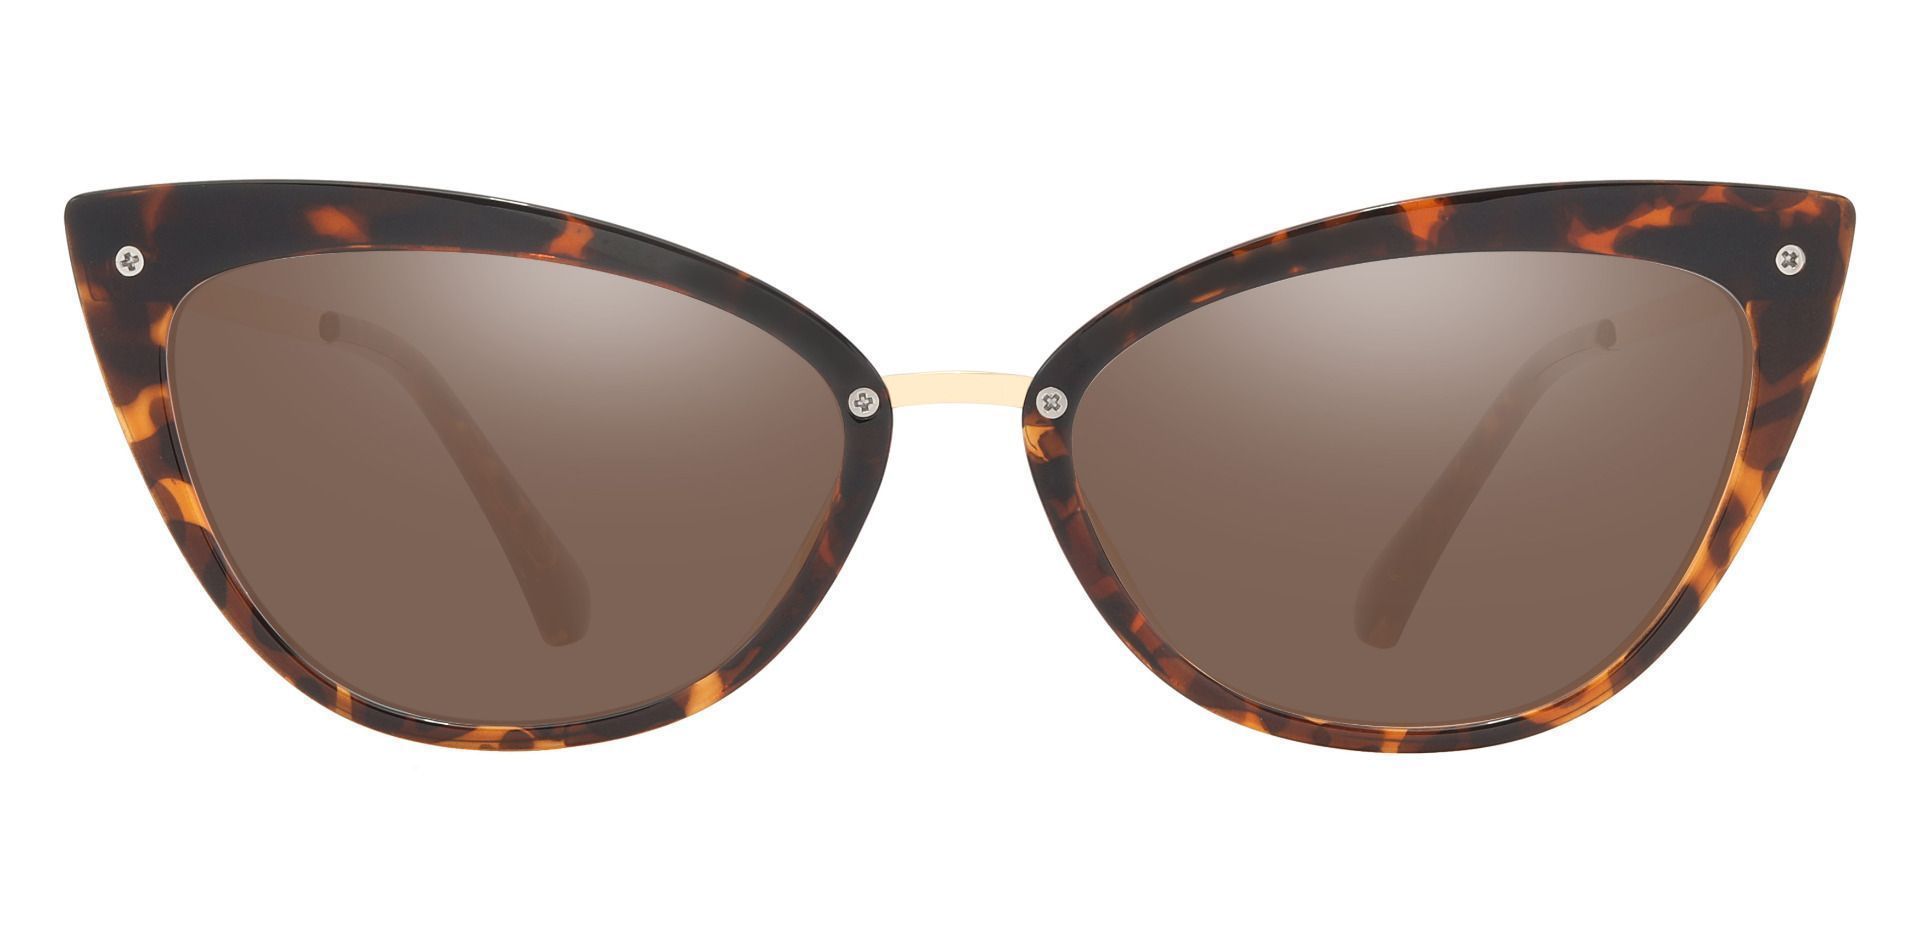 Glenda Cat Eye Prescription Sunglasses - Tortoise Frame With Brown Lenses